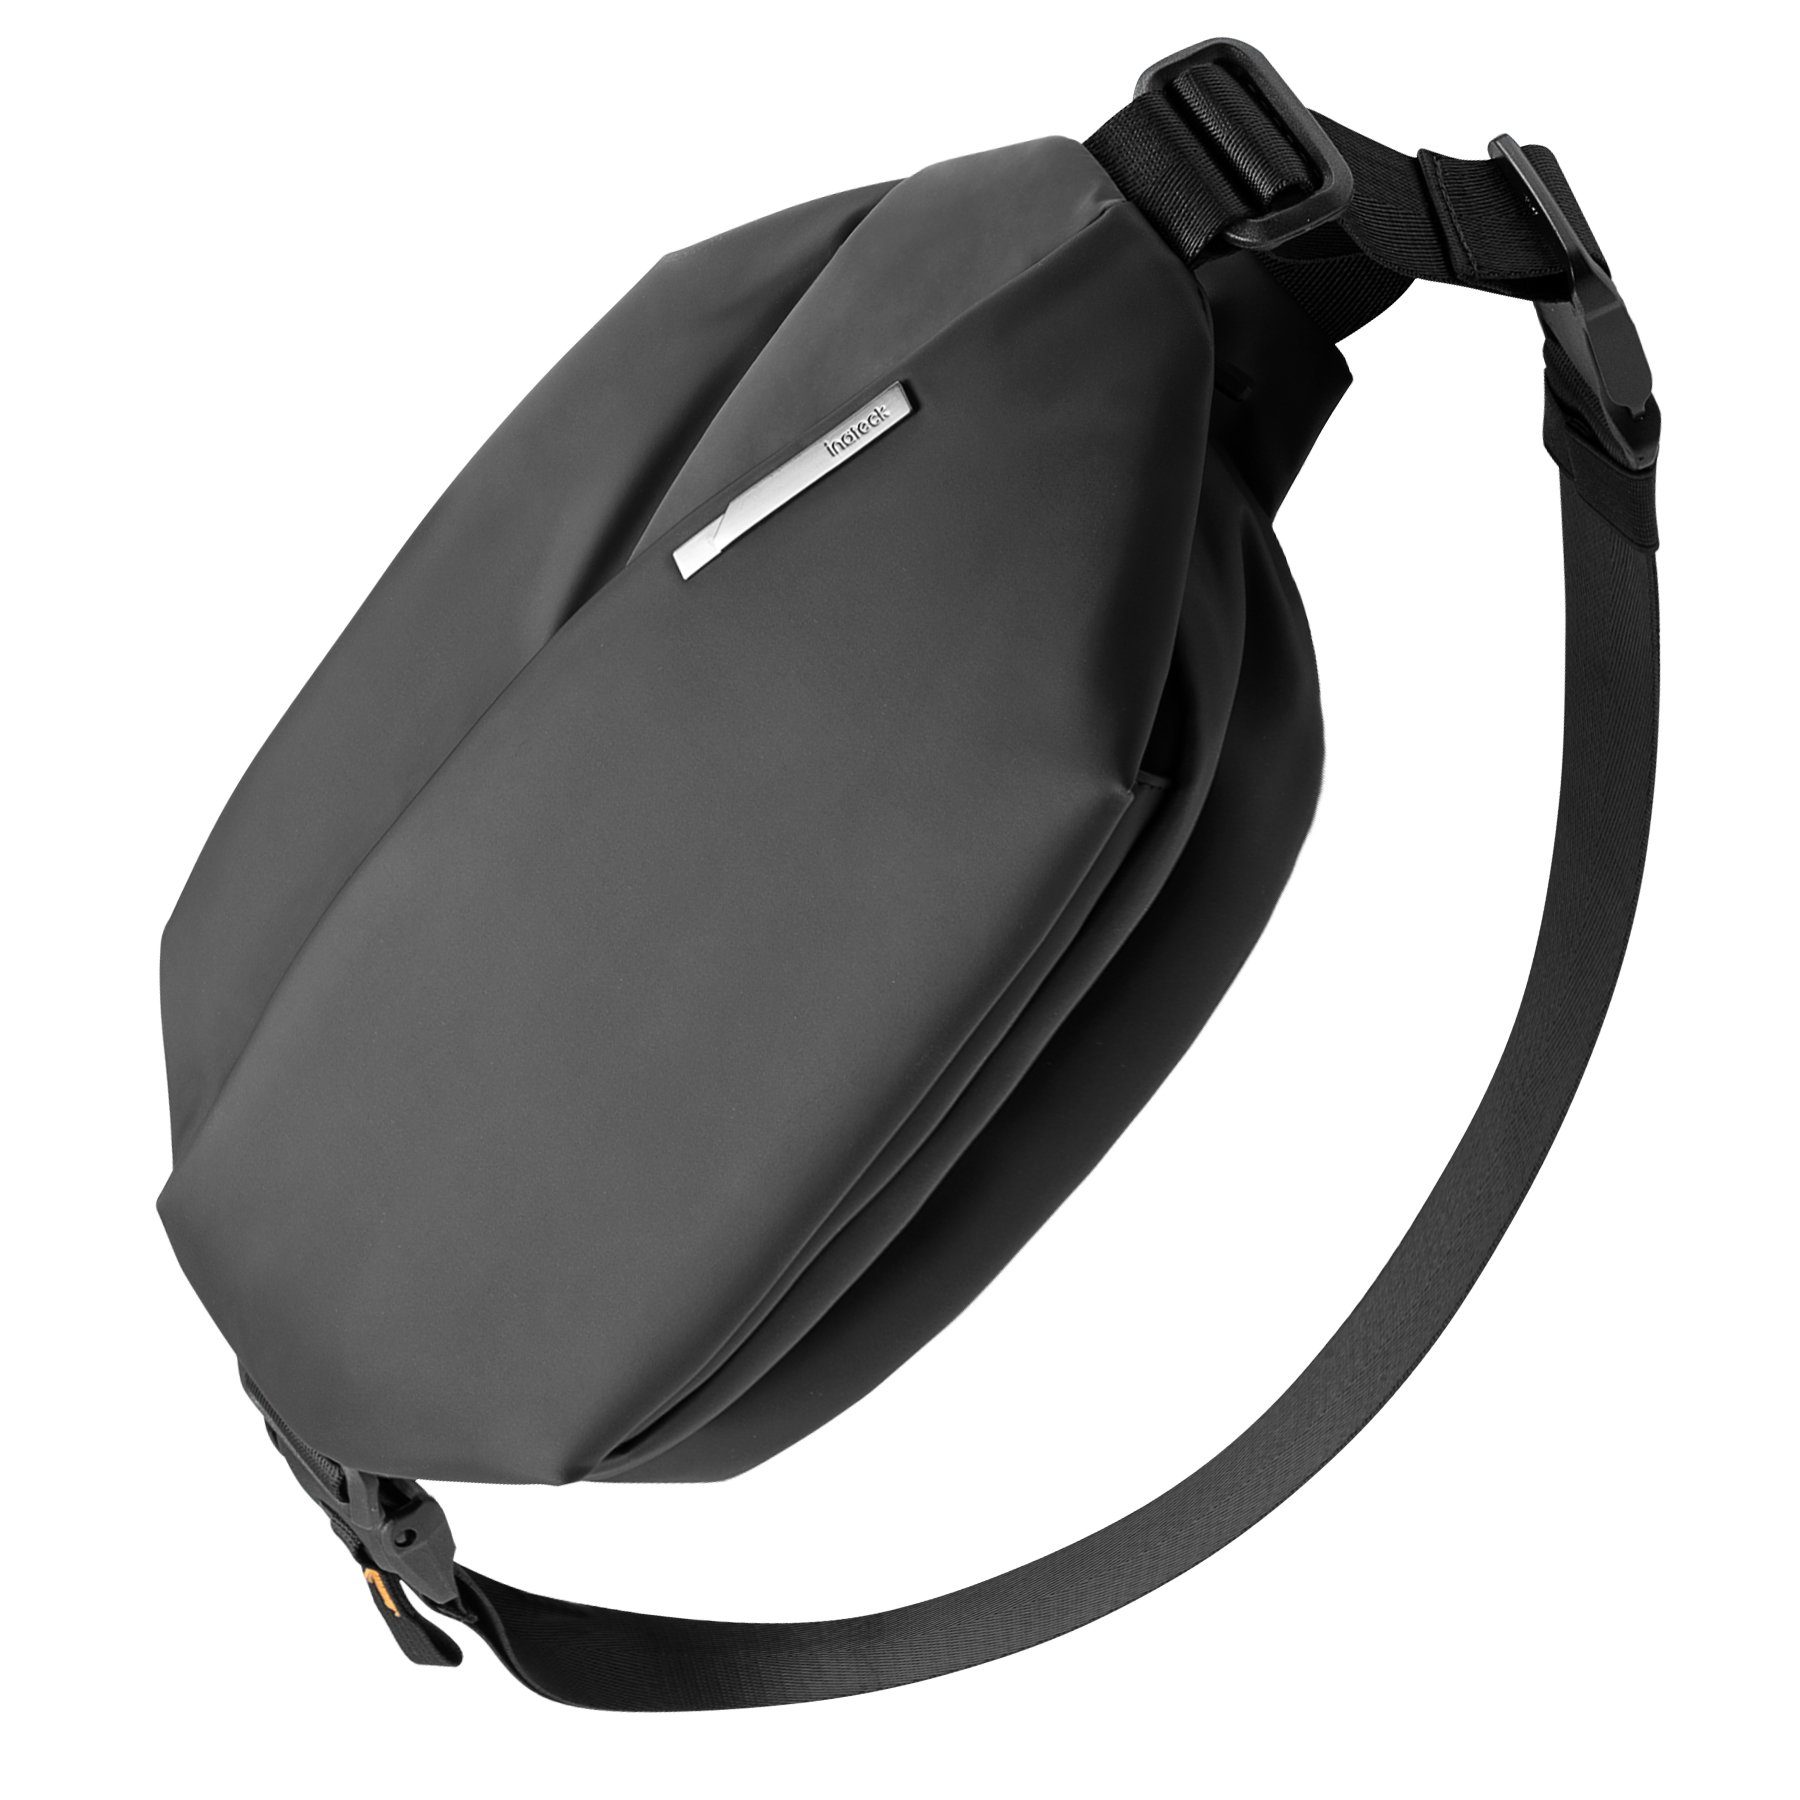 Inateck Gürteltasche Sling Bag, stylische Crossbody Bag mit verstellbarem Schultergurt, spritzwassergeschützt und abriebfest